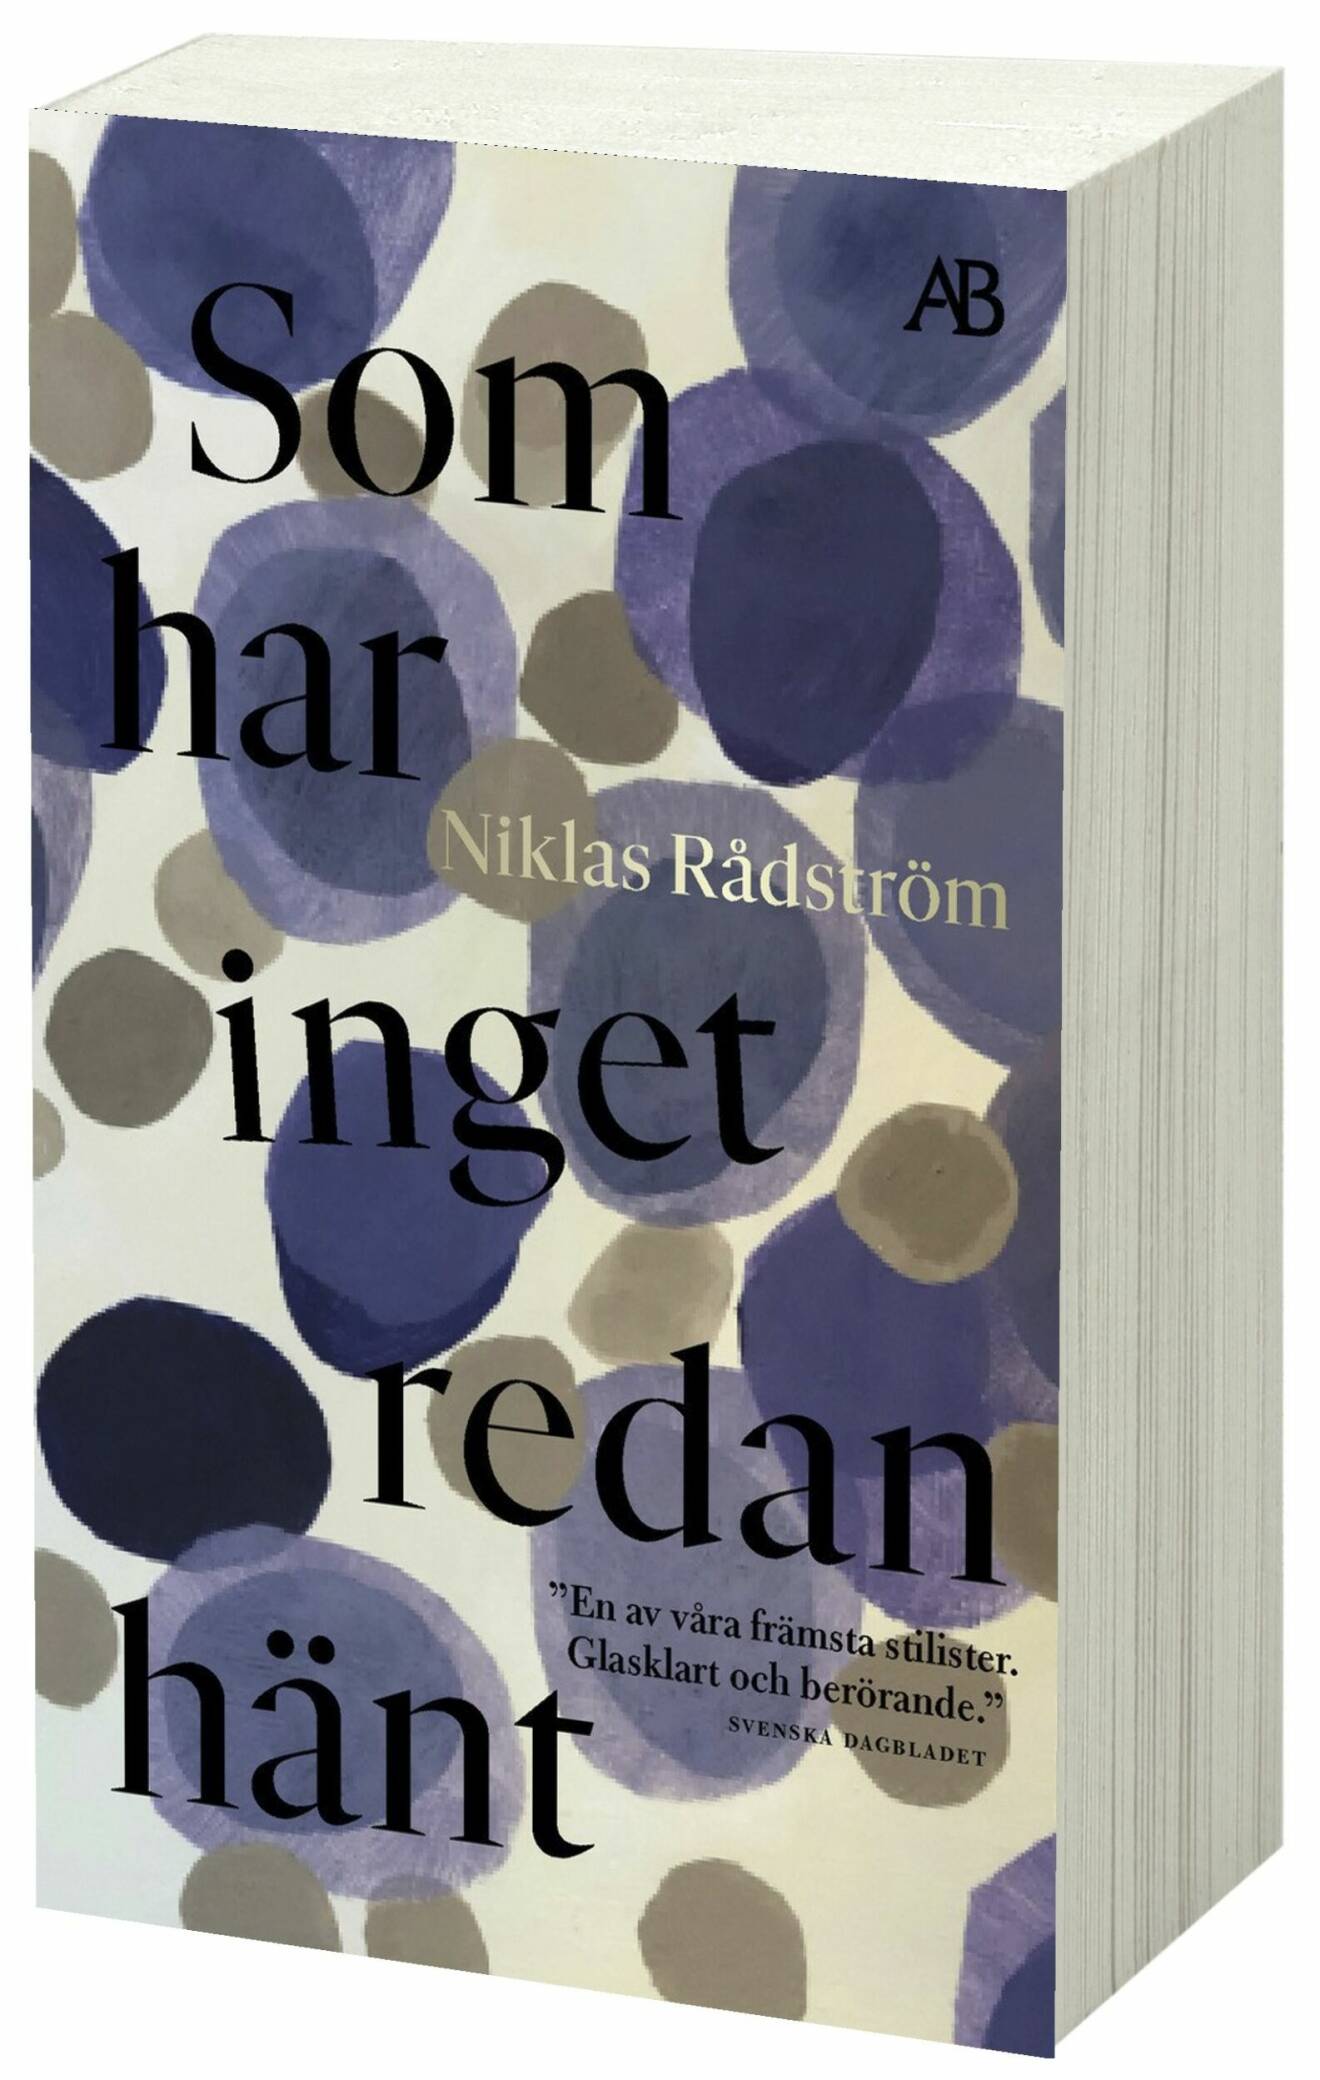 Som har inget redan hänt av Niklas Rådström (Albert Bonniers förlag).